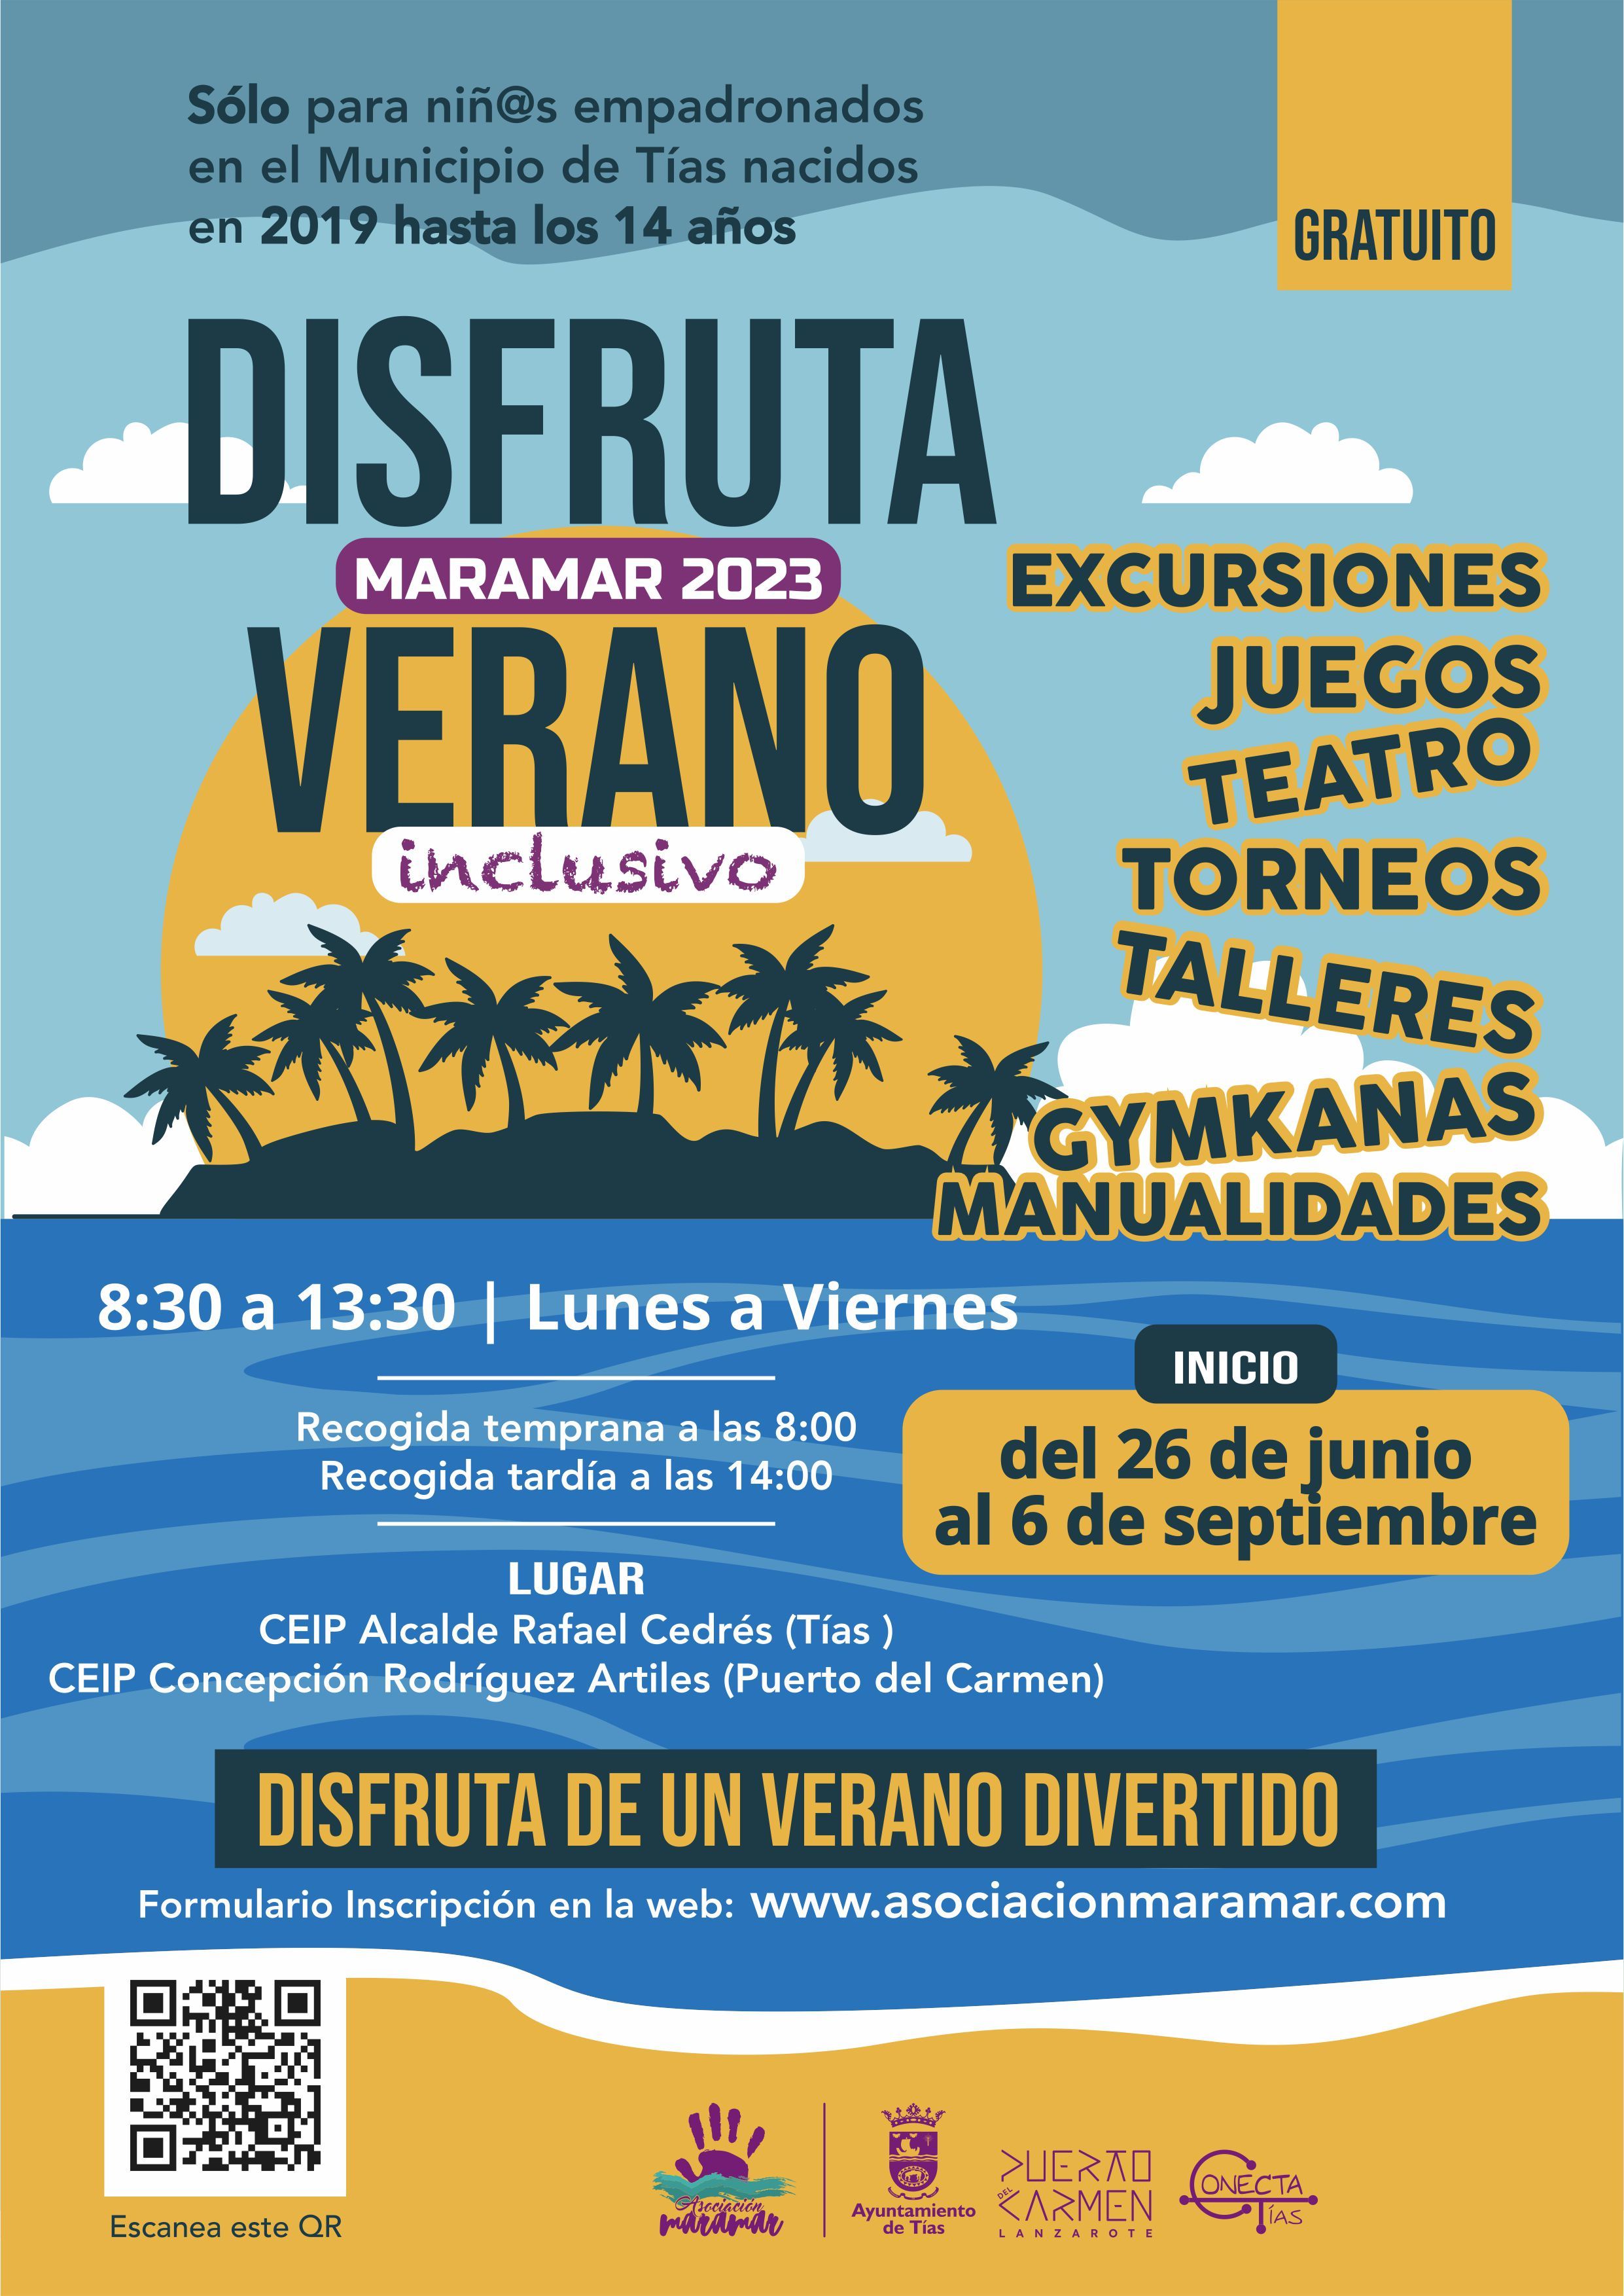 Disfruta Maramar 2023 Verano inclusivo promovido por el Ayuntamiento de Tías